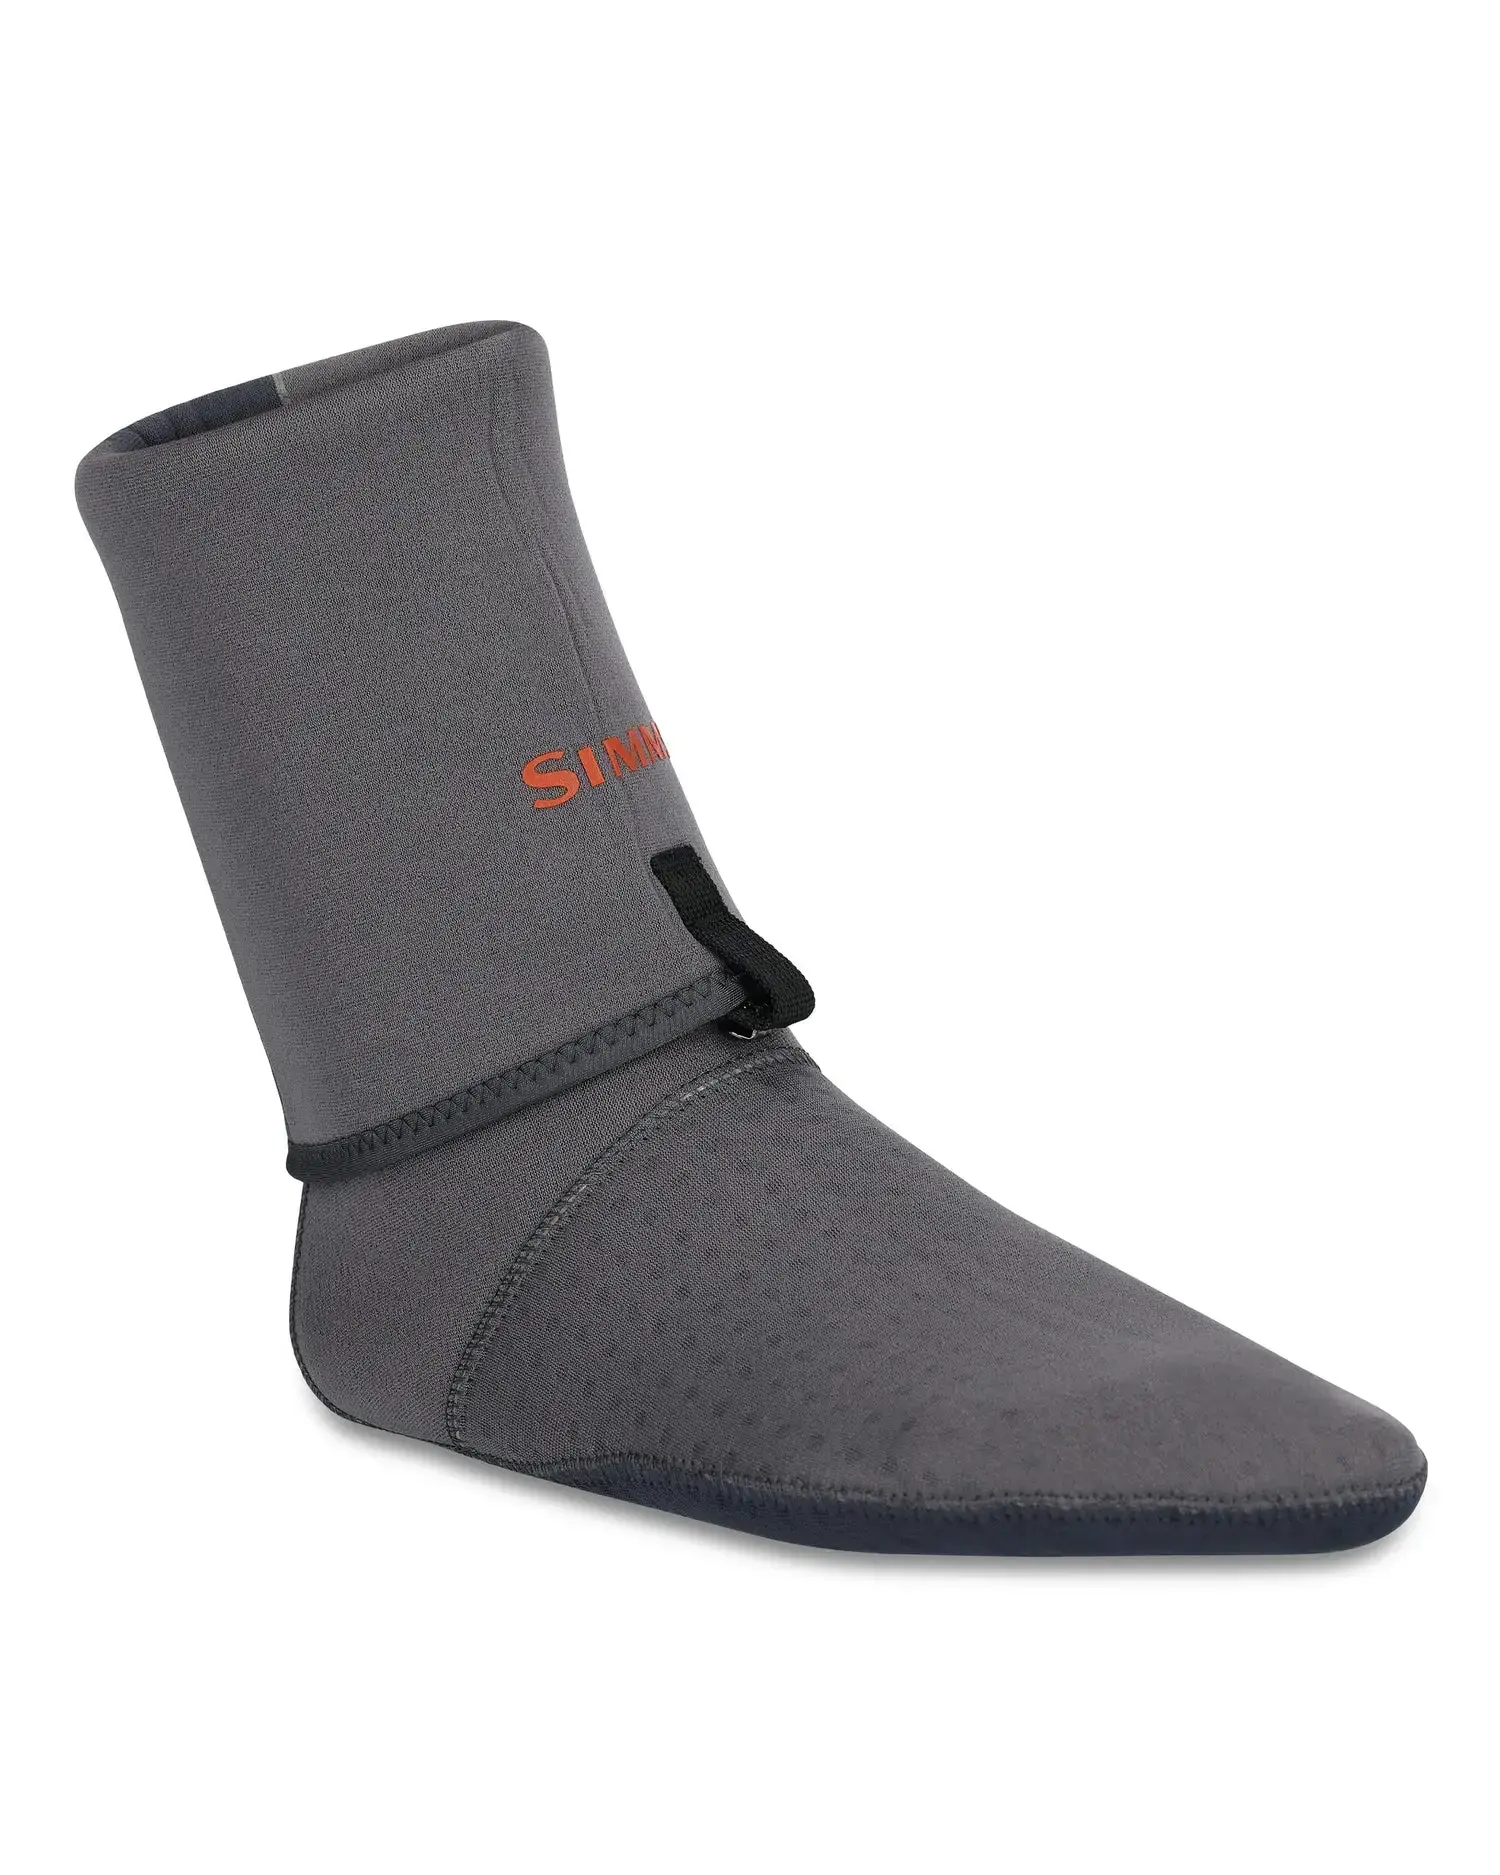 Simms Guide Guard Socks - Anvil